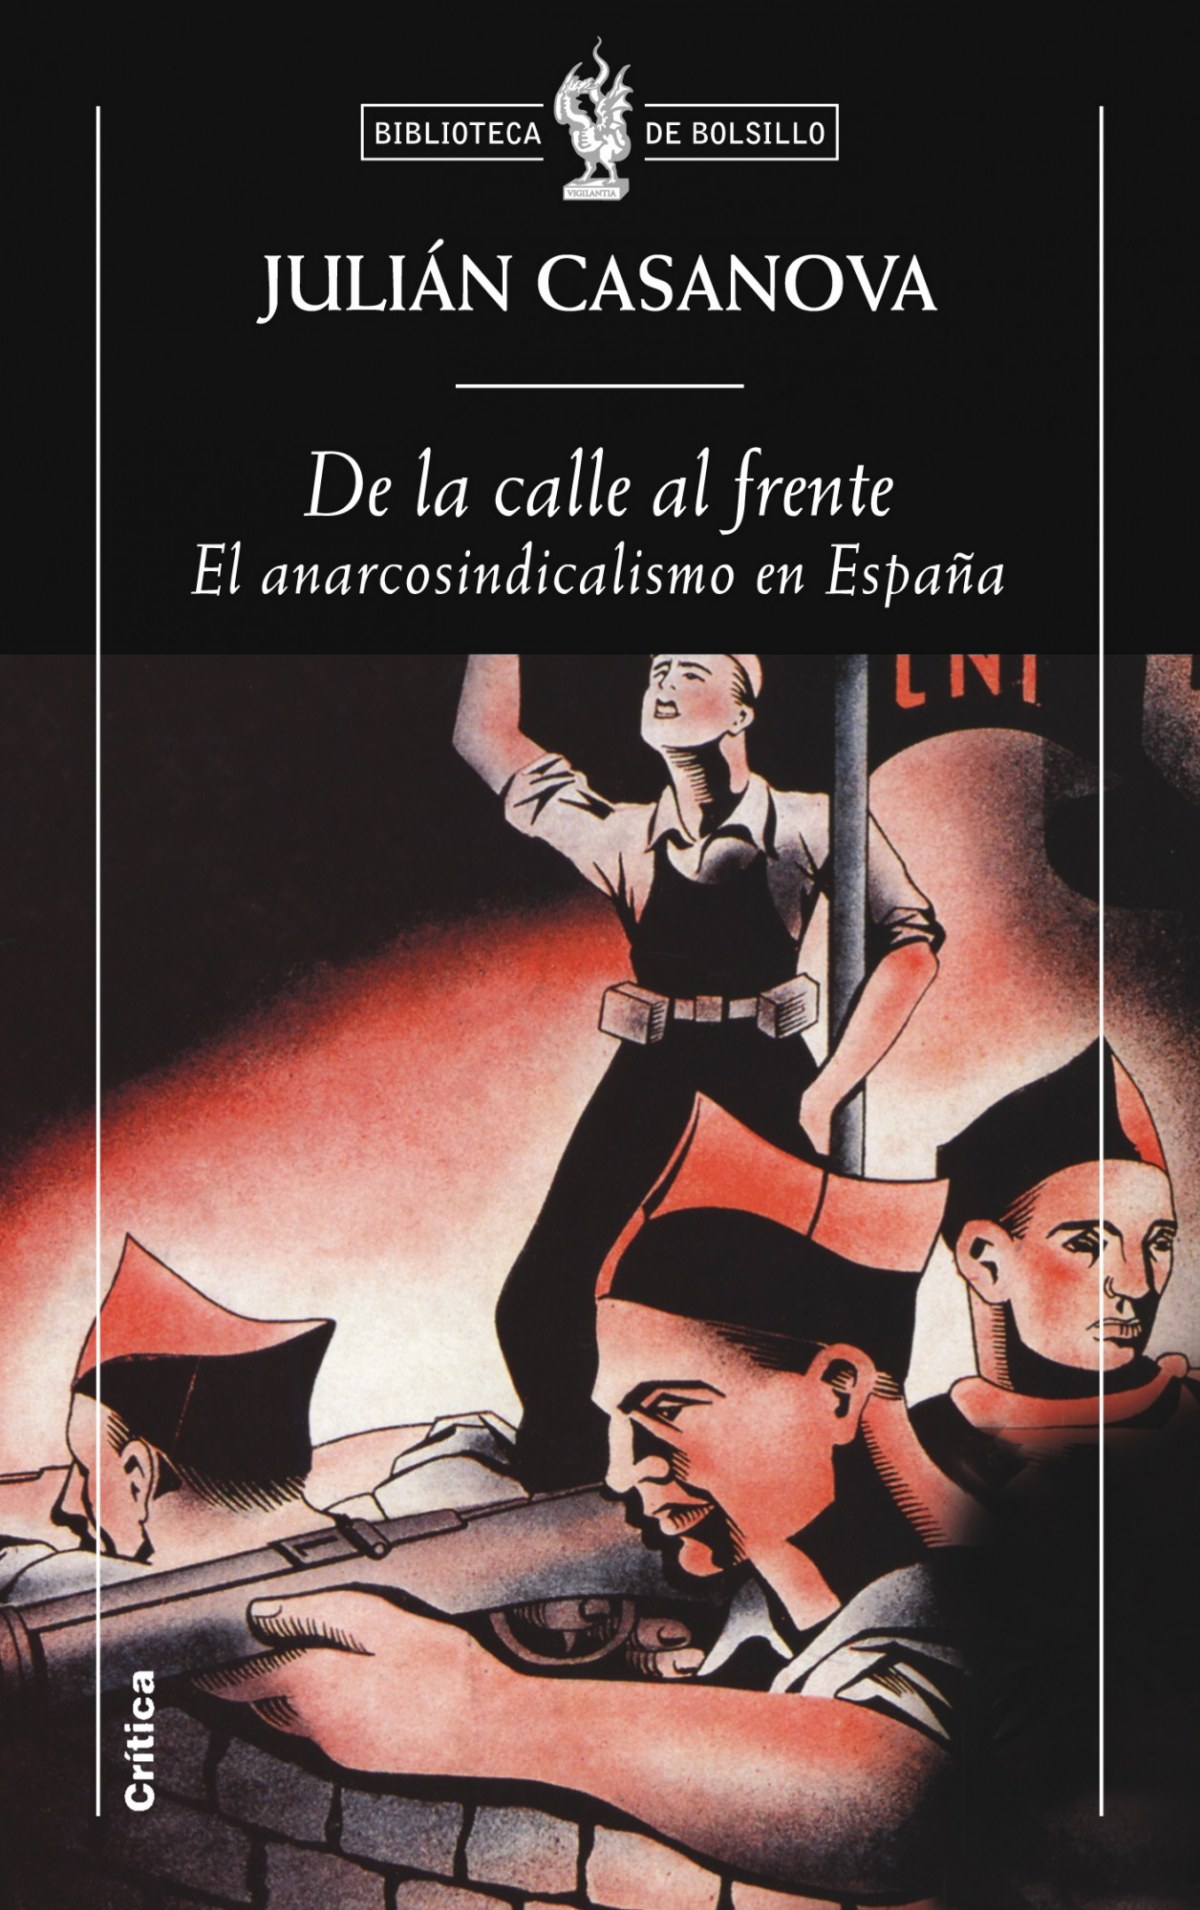 De la calle al frente El anarcosindicalismo en España - Julián Casanova